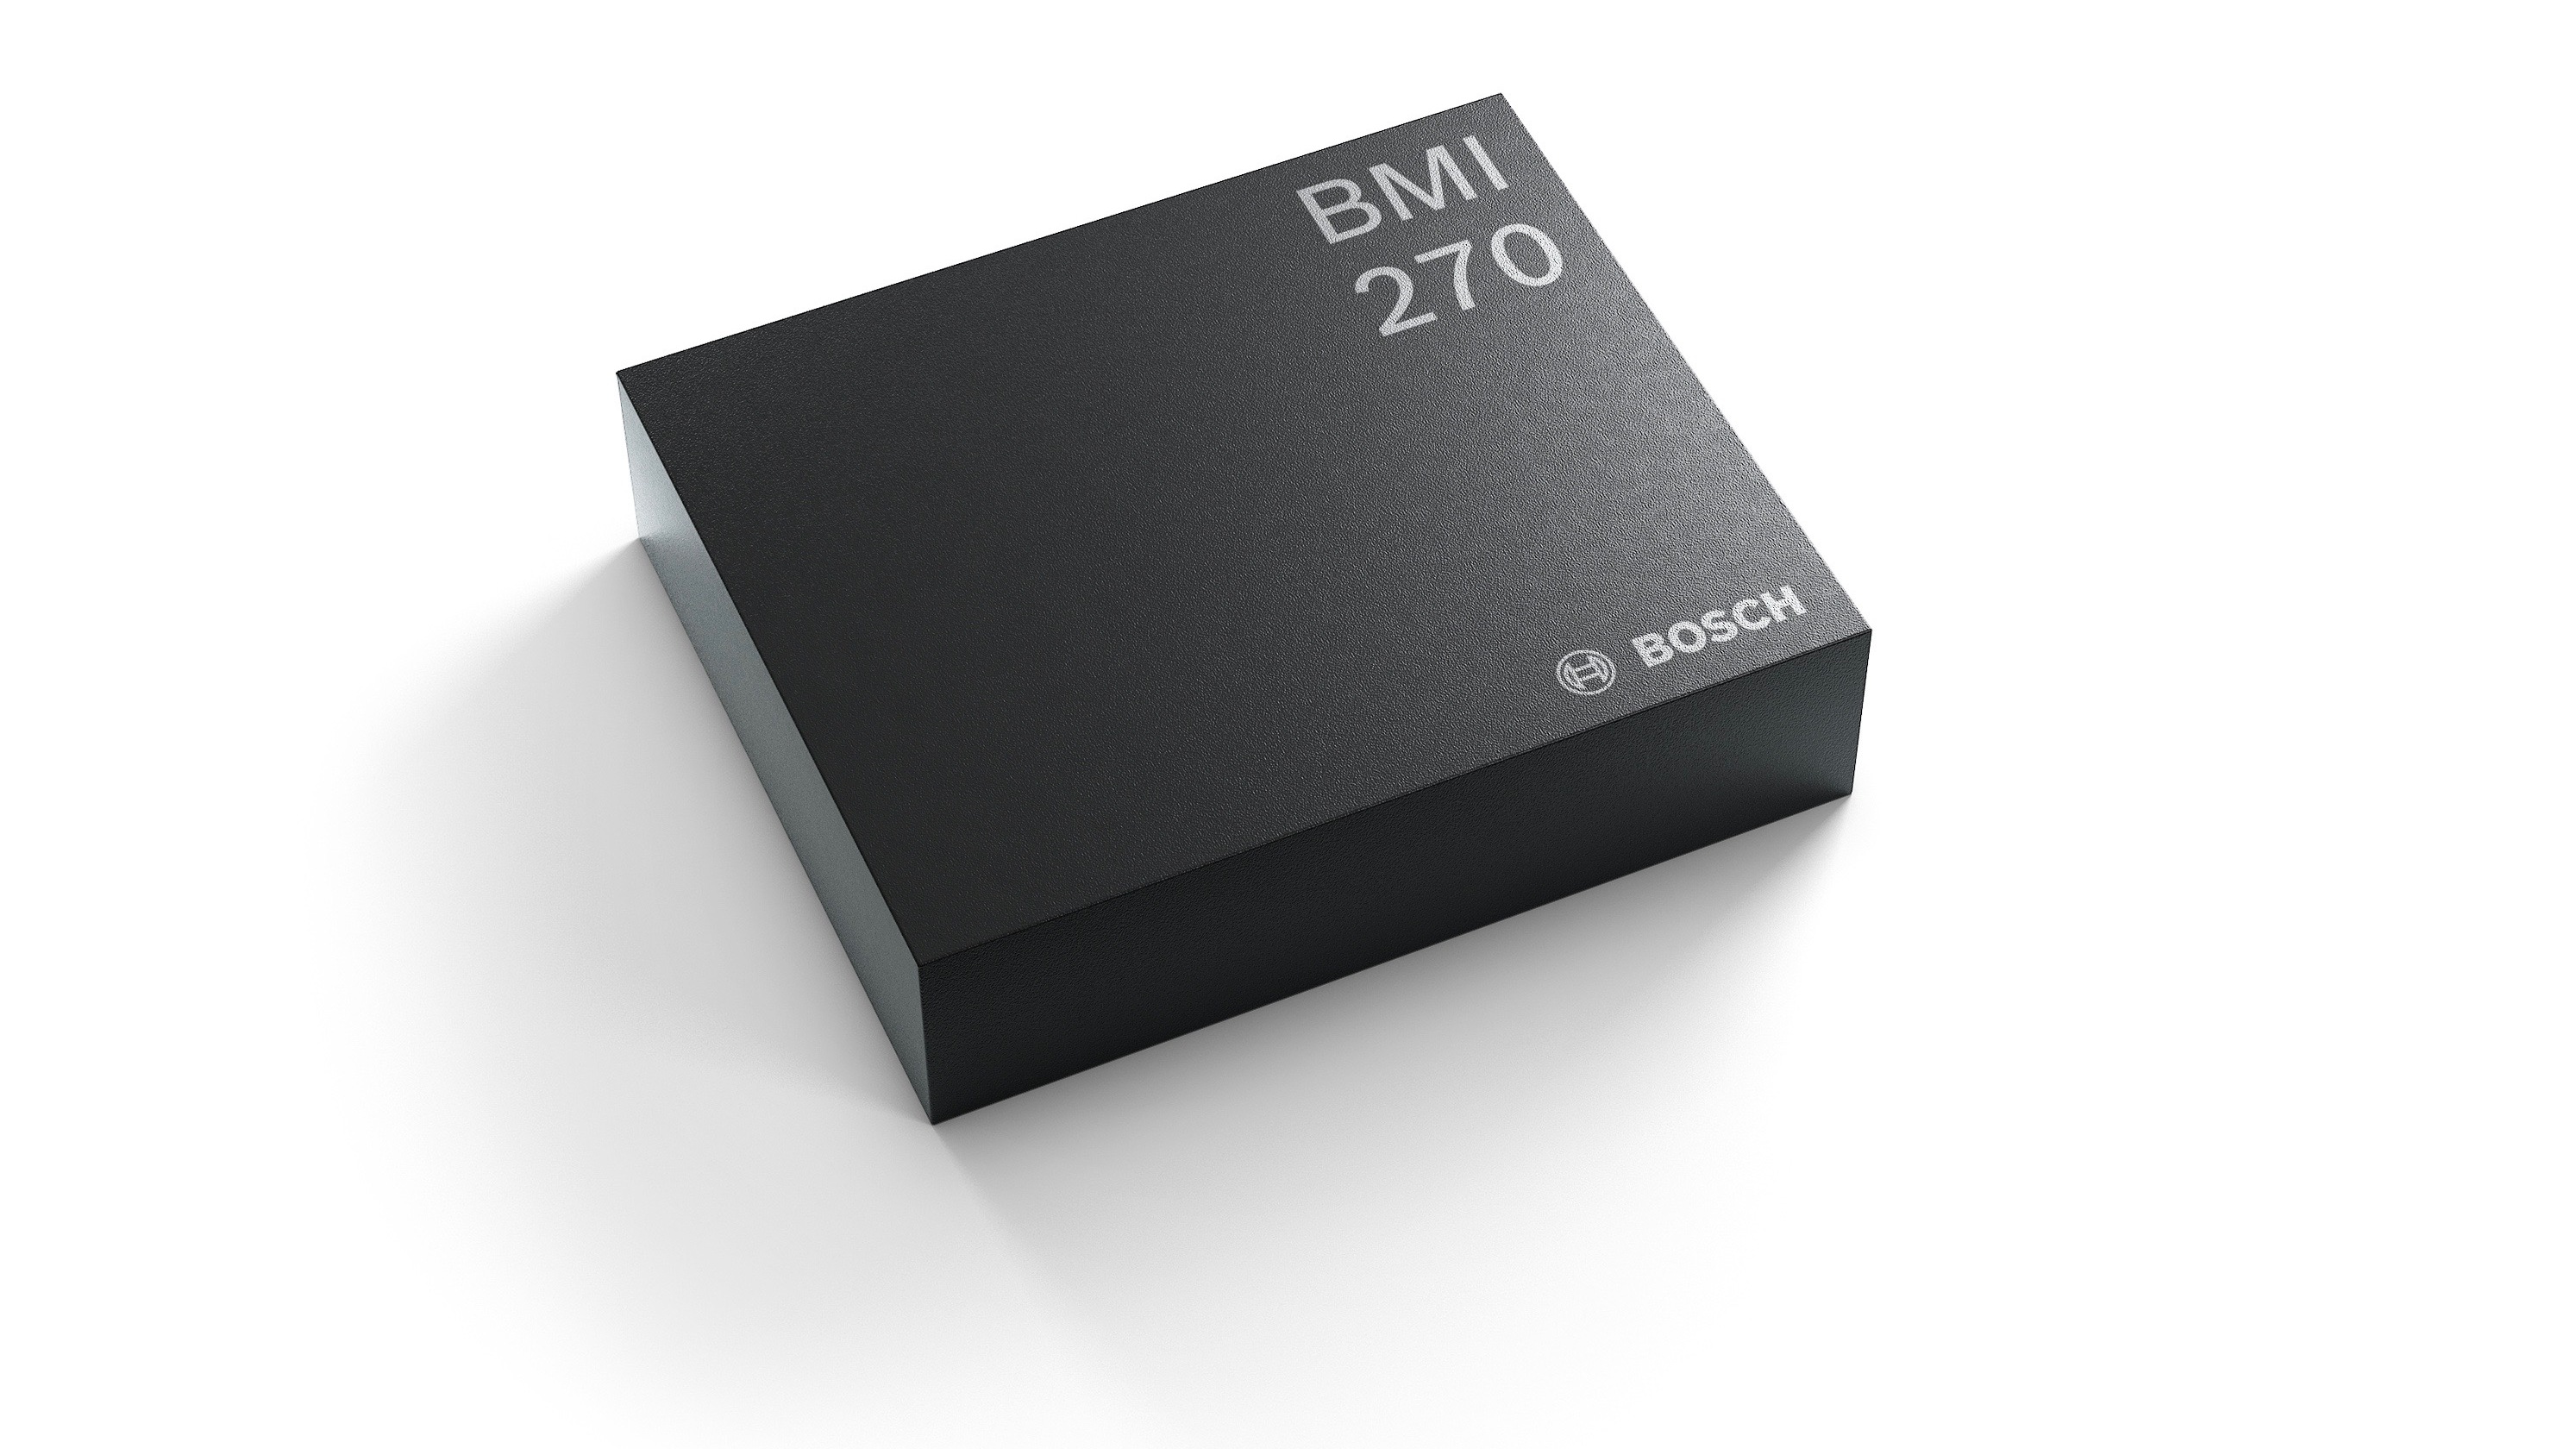 Bosch lancia il sensore smart IMU BMI270 a bassissimo consumo ottimizzato per i wearable